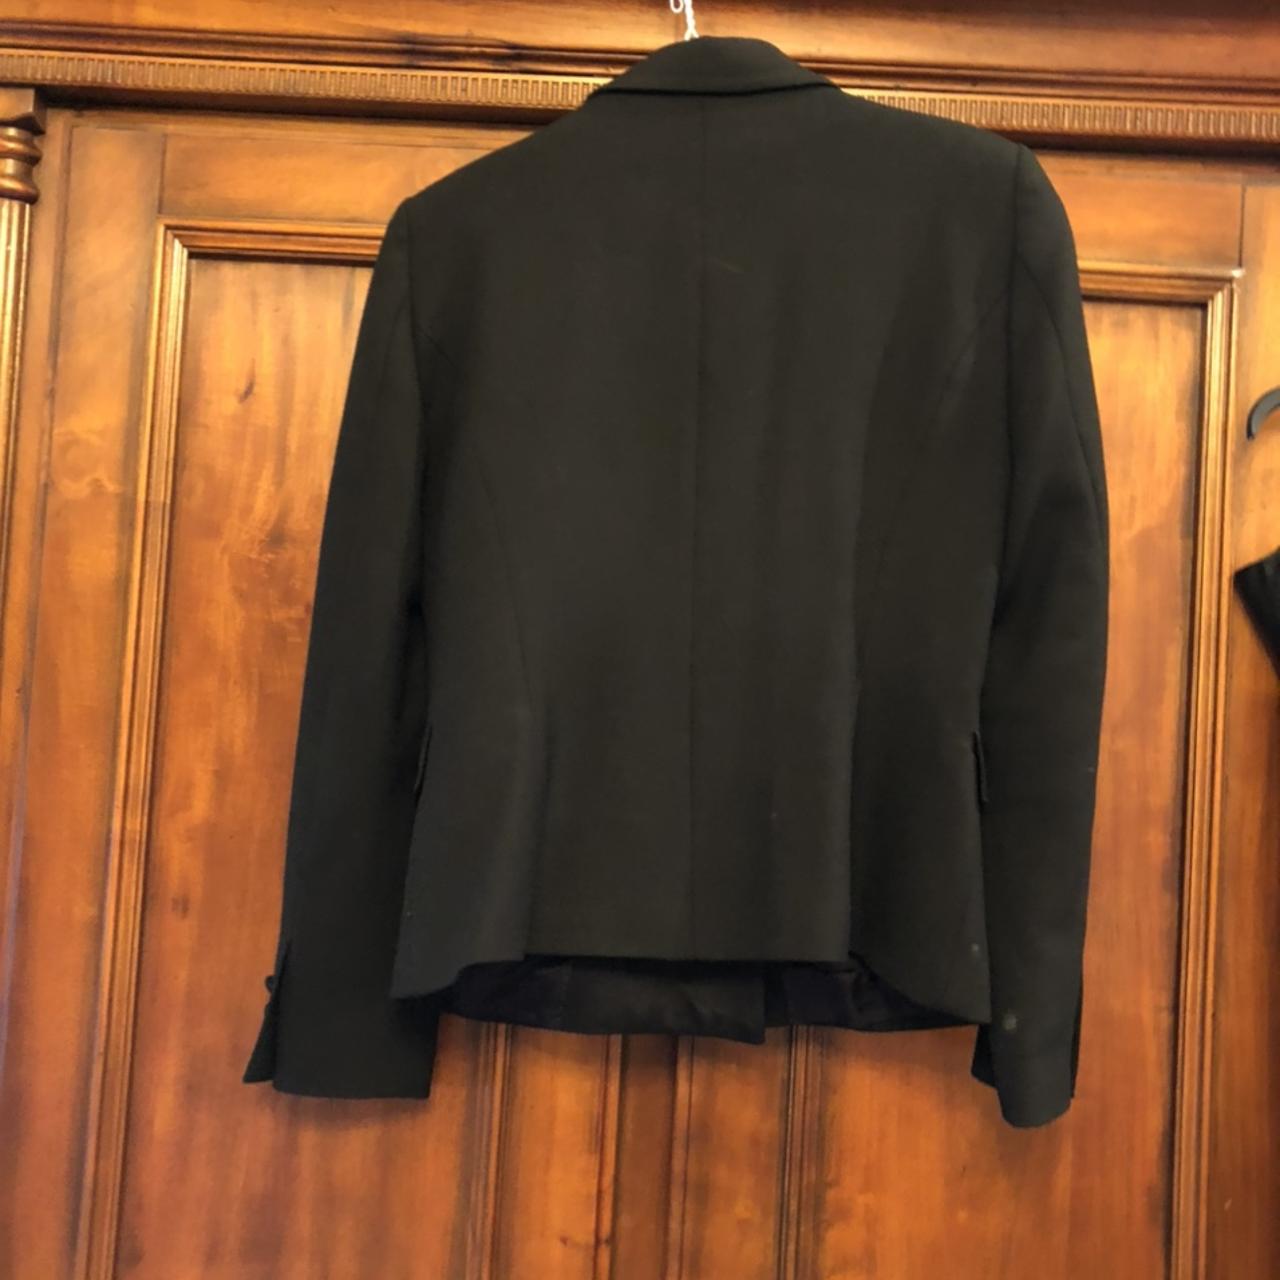 Zara black tuxedo jacket Size Large - Depop